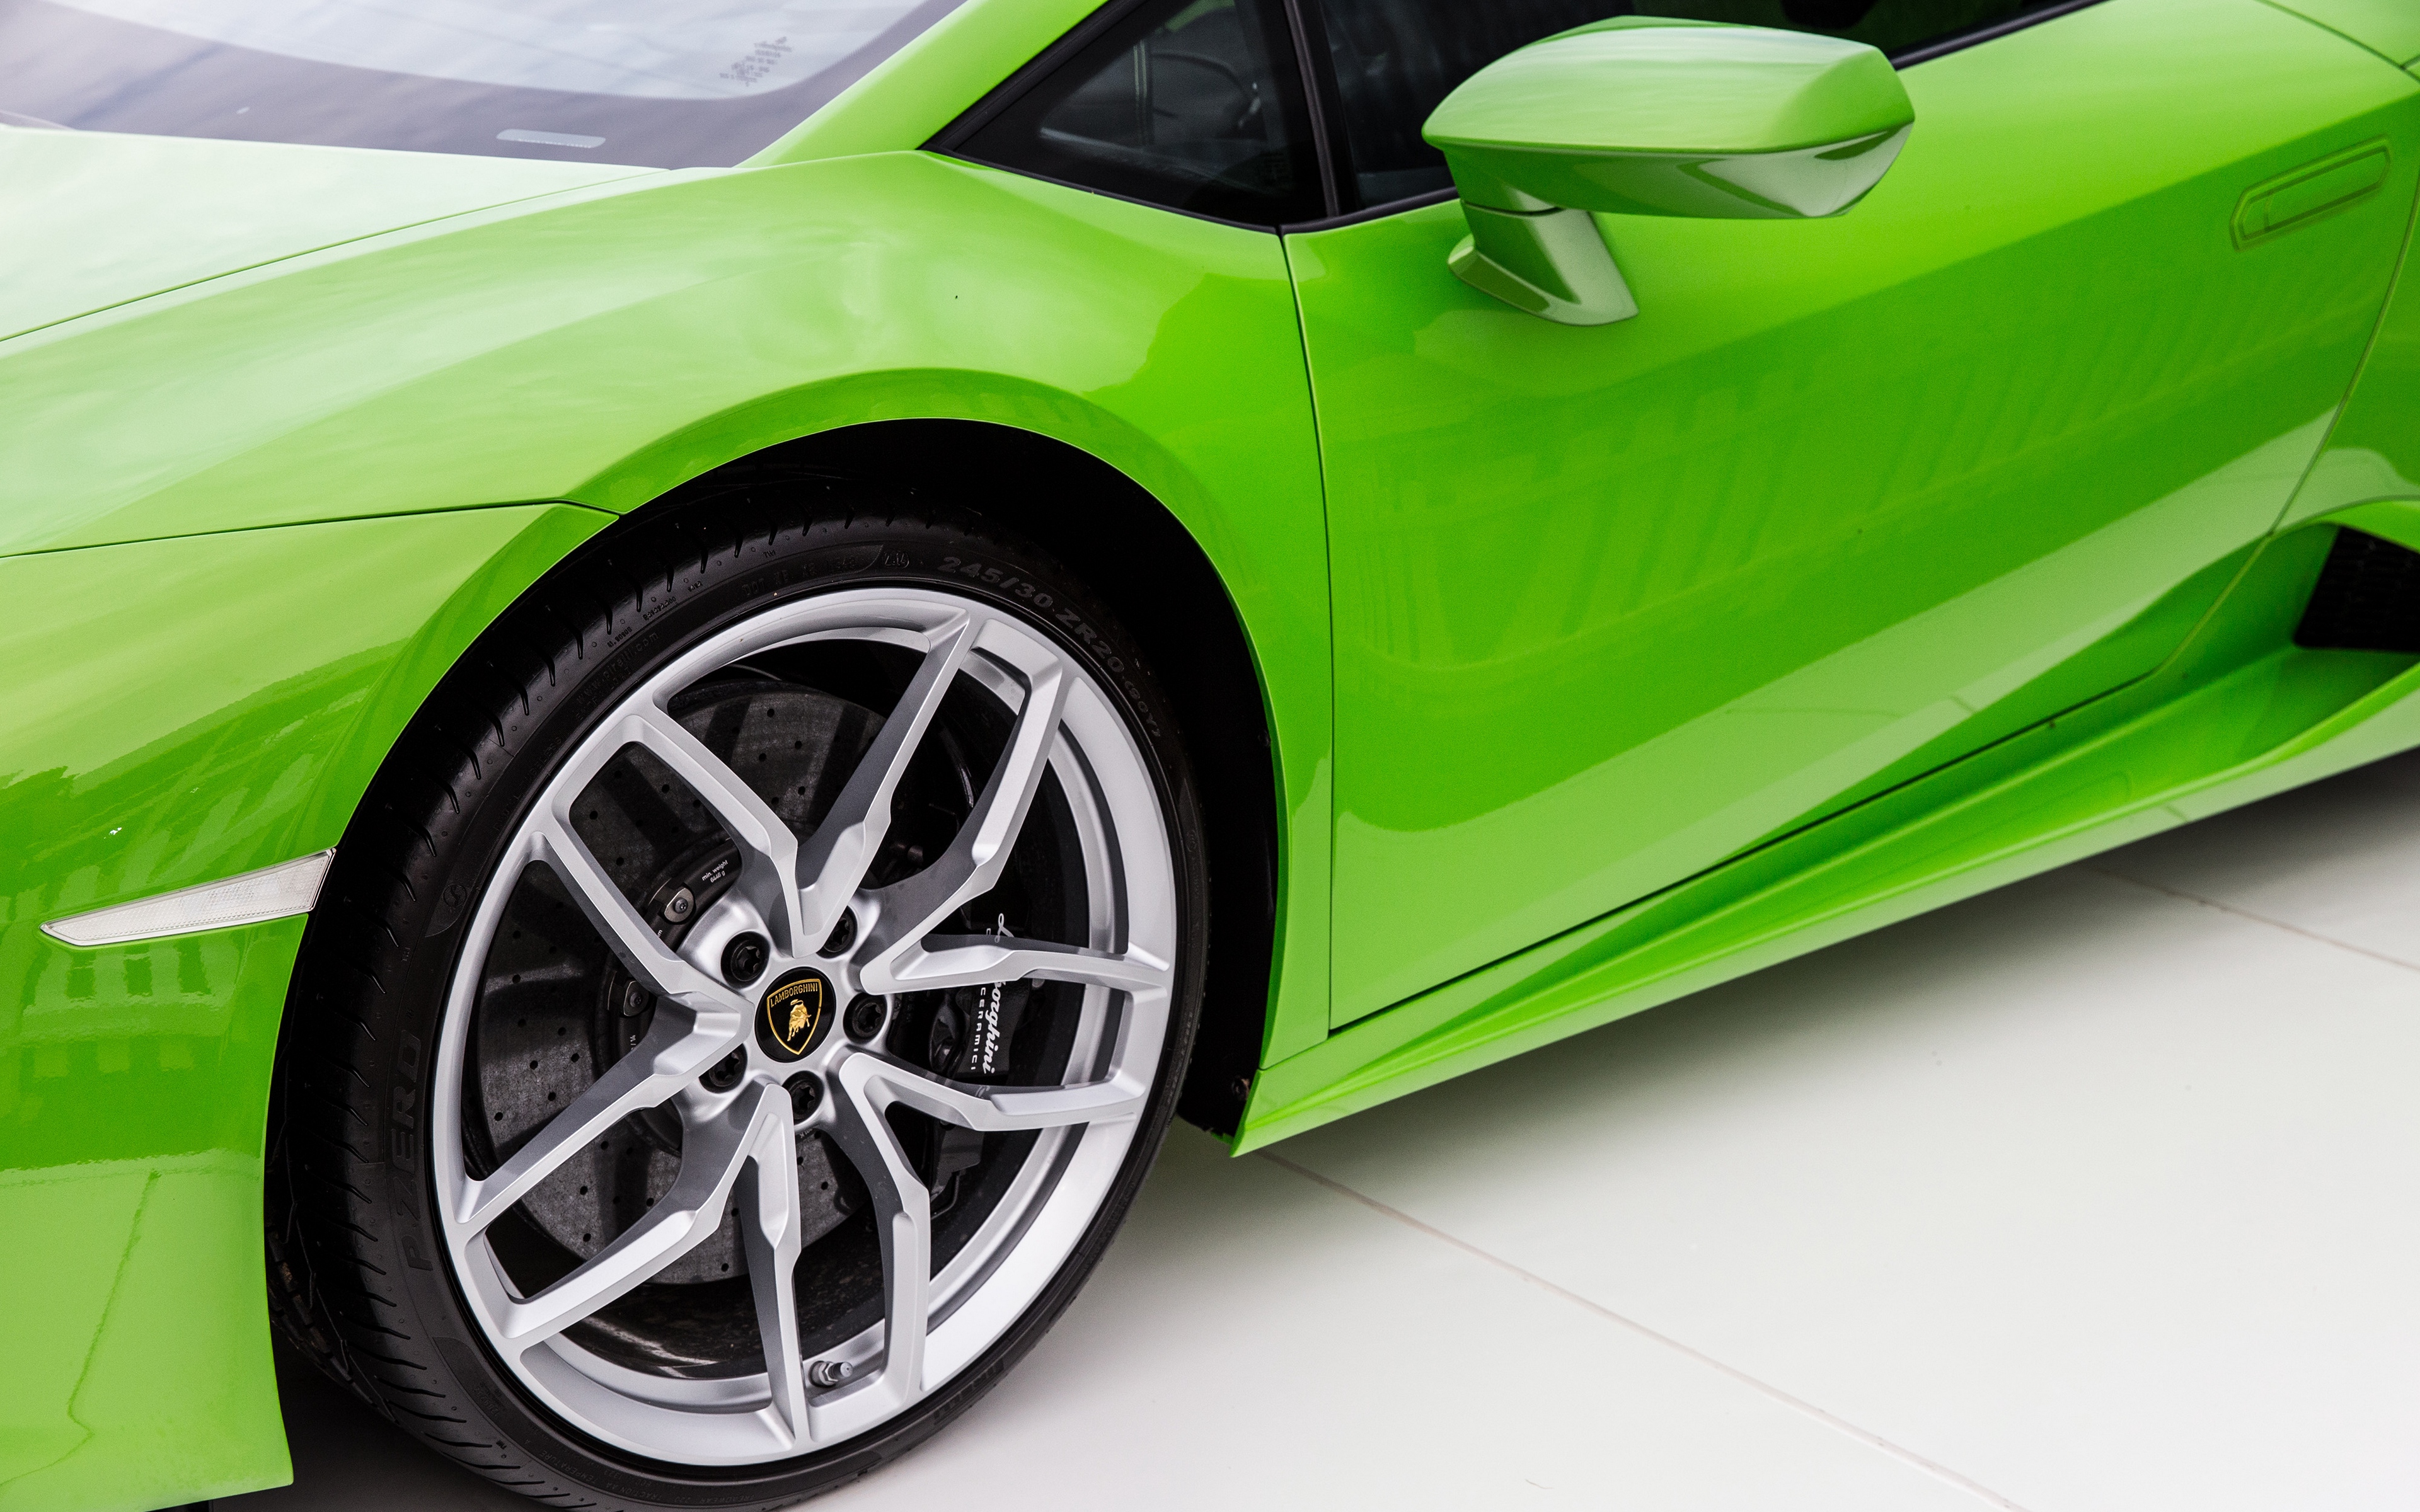 General 3840x2400 car vehicle Lamborghini Lamborghini Huracan green cars wheels italian cars Volkswagen Group